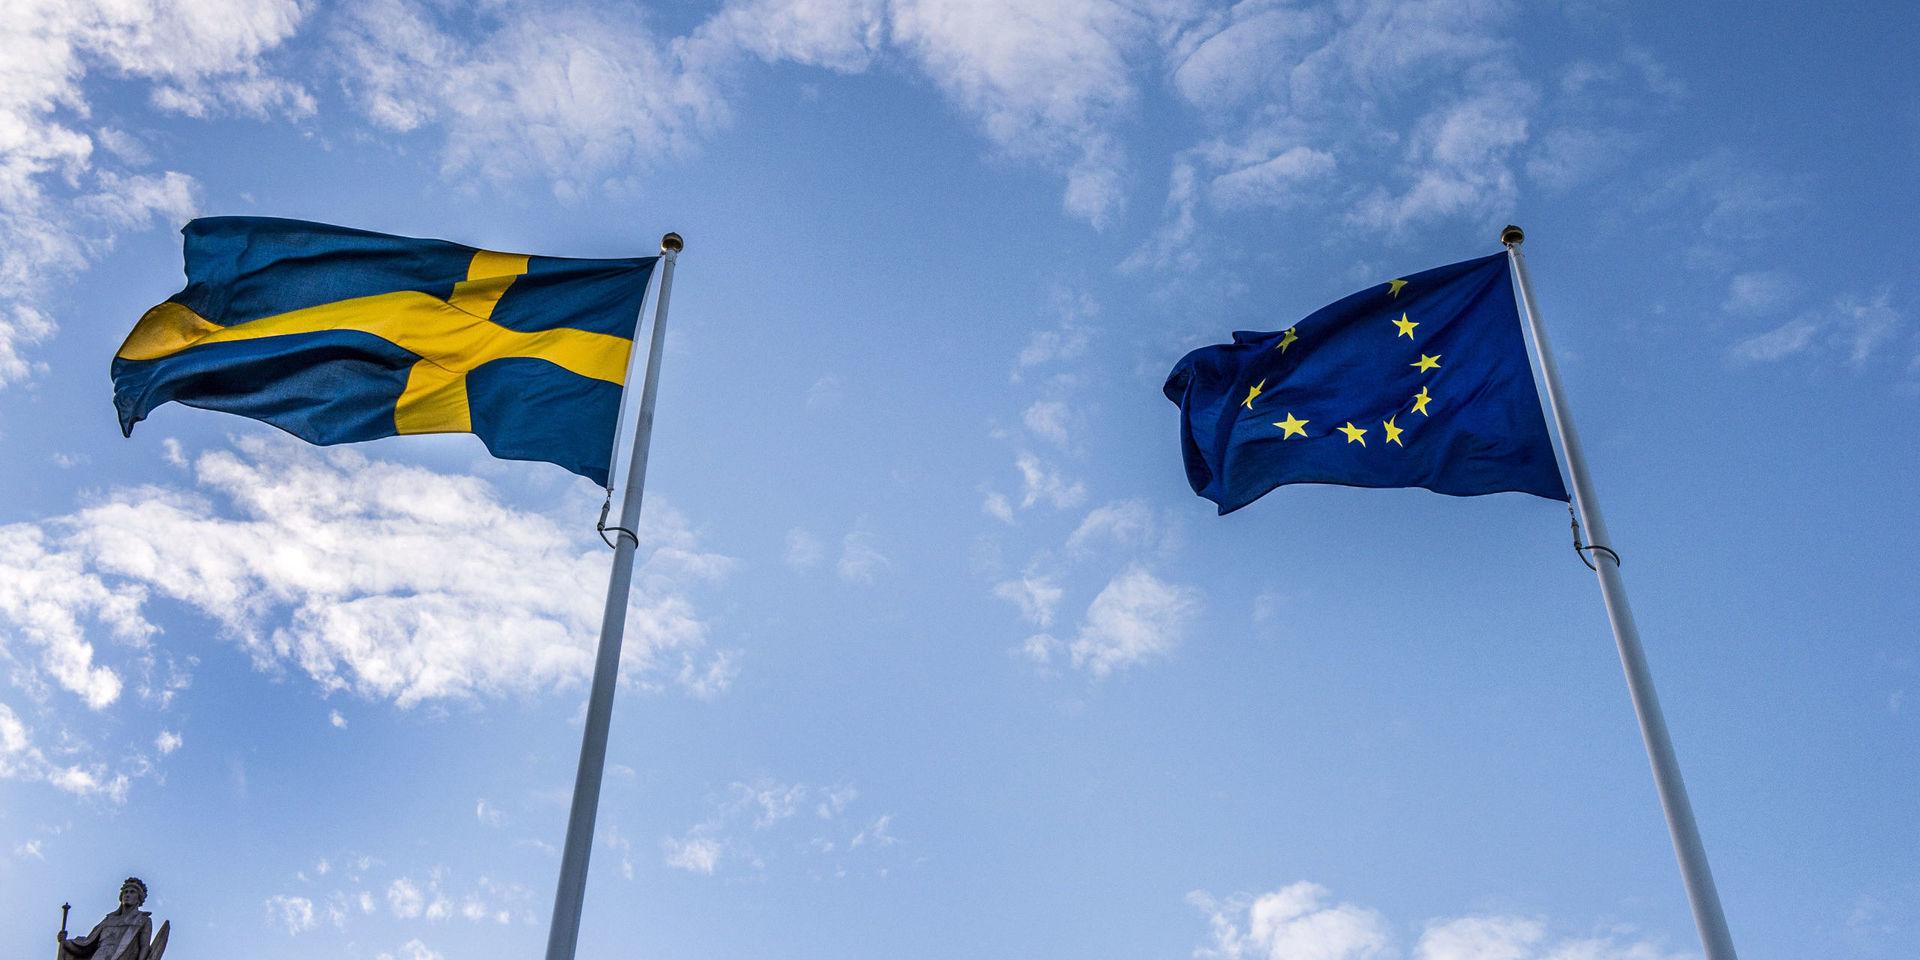 Stort stöd. Svenskarna är mer positiva till EU-medlemskapet än någonsin, enligt en ny undersökning.   